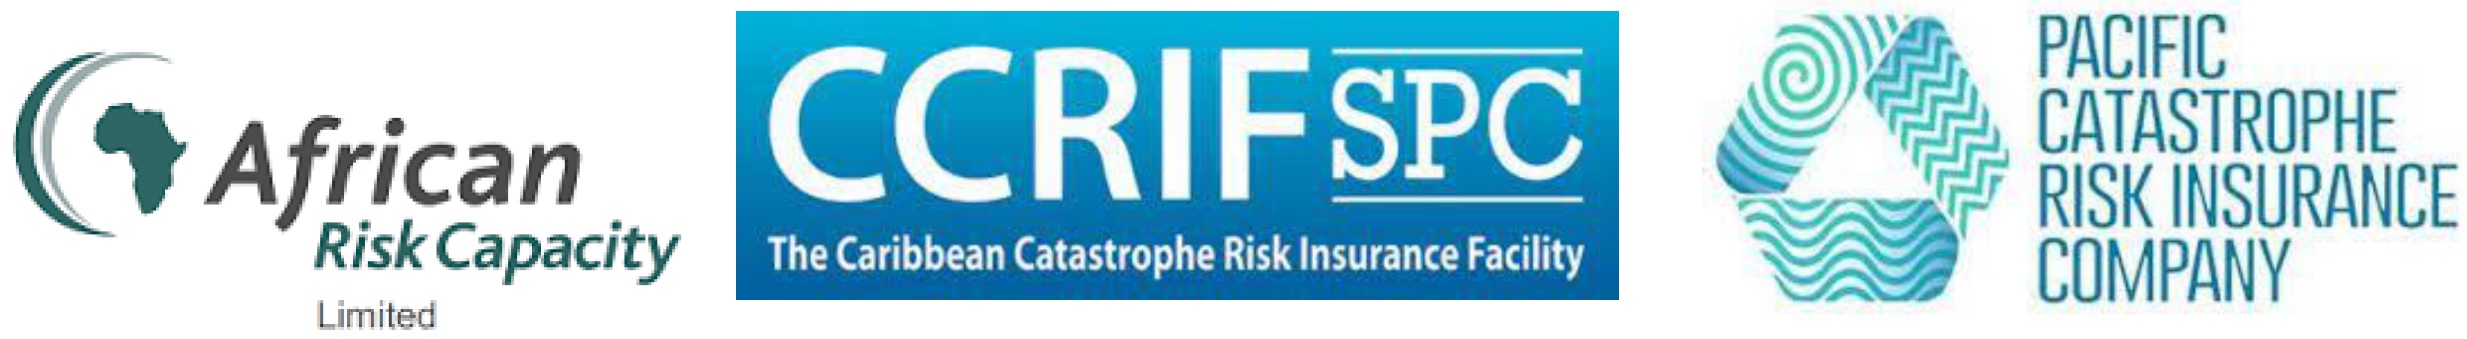 la African Risk Capacity Ltd. (ARC), el CCRIF SPC (anteriormente conocido como el Mecanismo de Seguro Contra el Riesgo de Catástrofes en el Caribe) y la Pacific Catastrophe Risk Insurance Company (PCRIC)